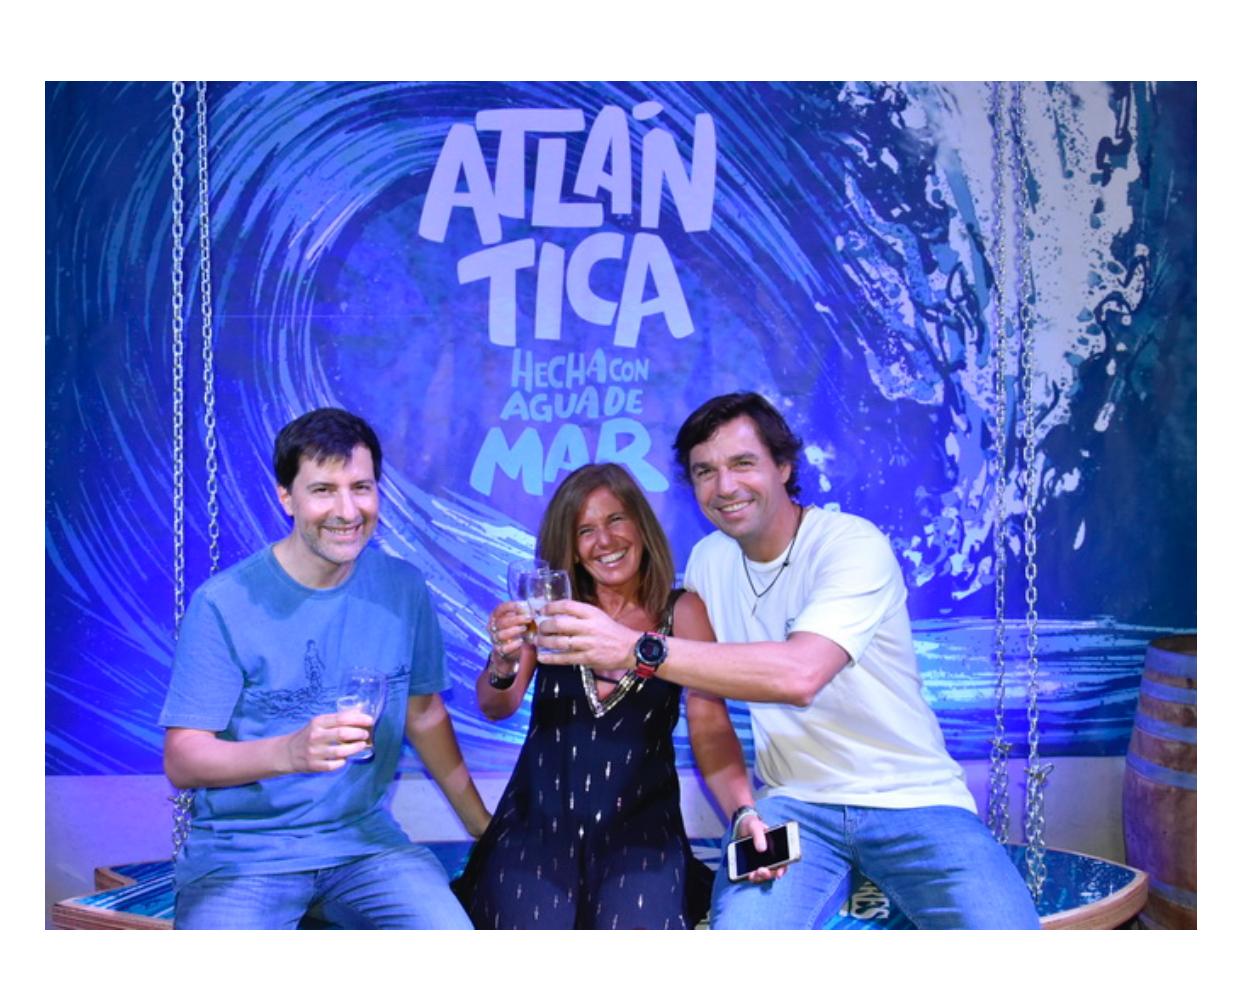 "Atlántica", la primera cerveza argentina elaborada a partir de agua de mar